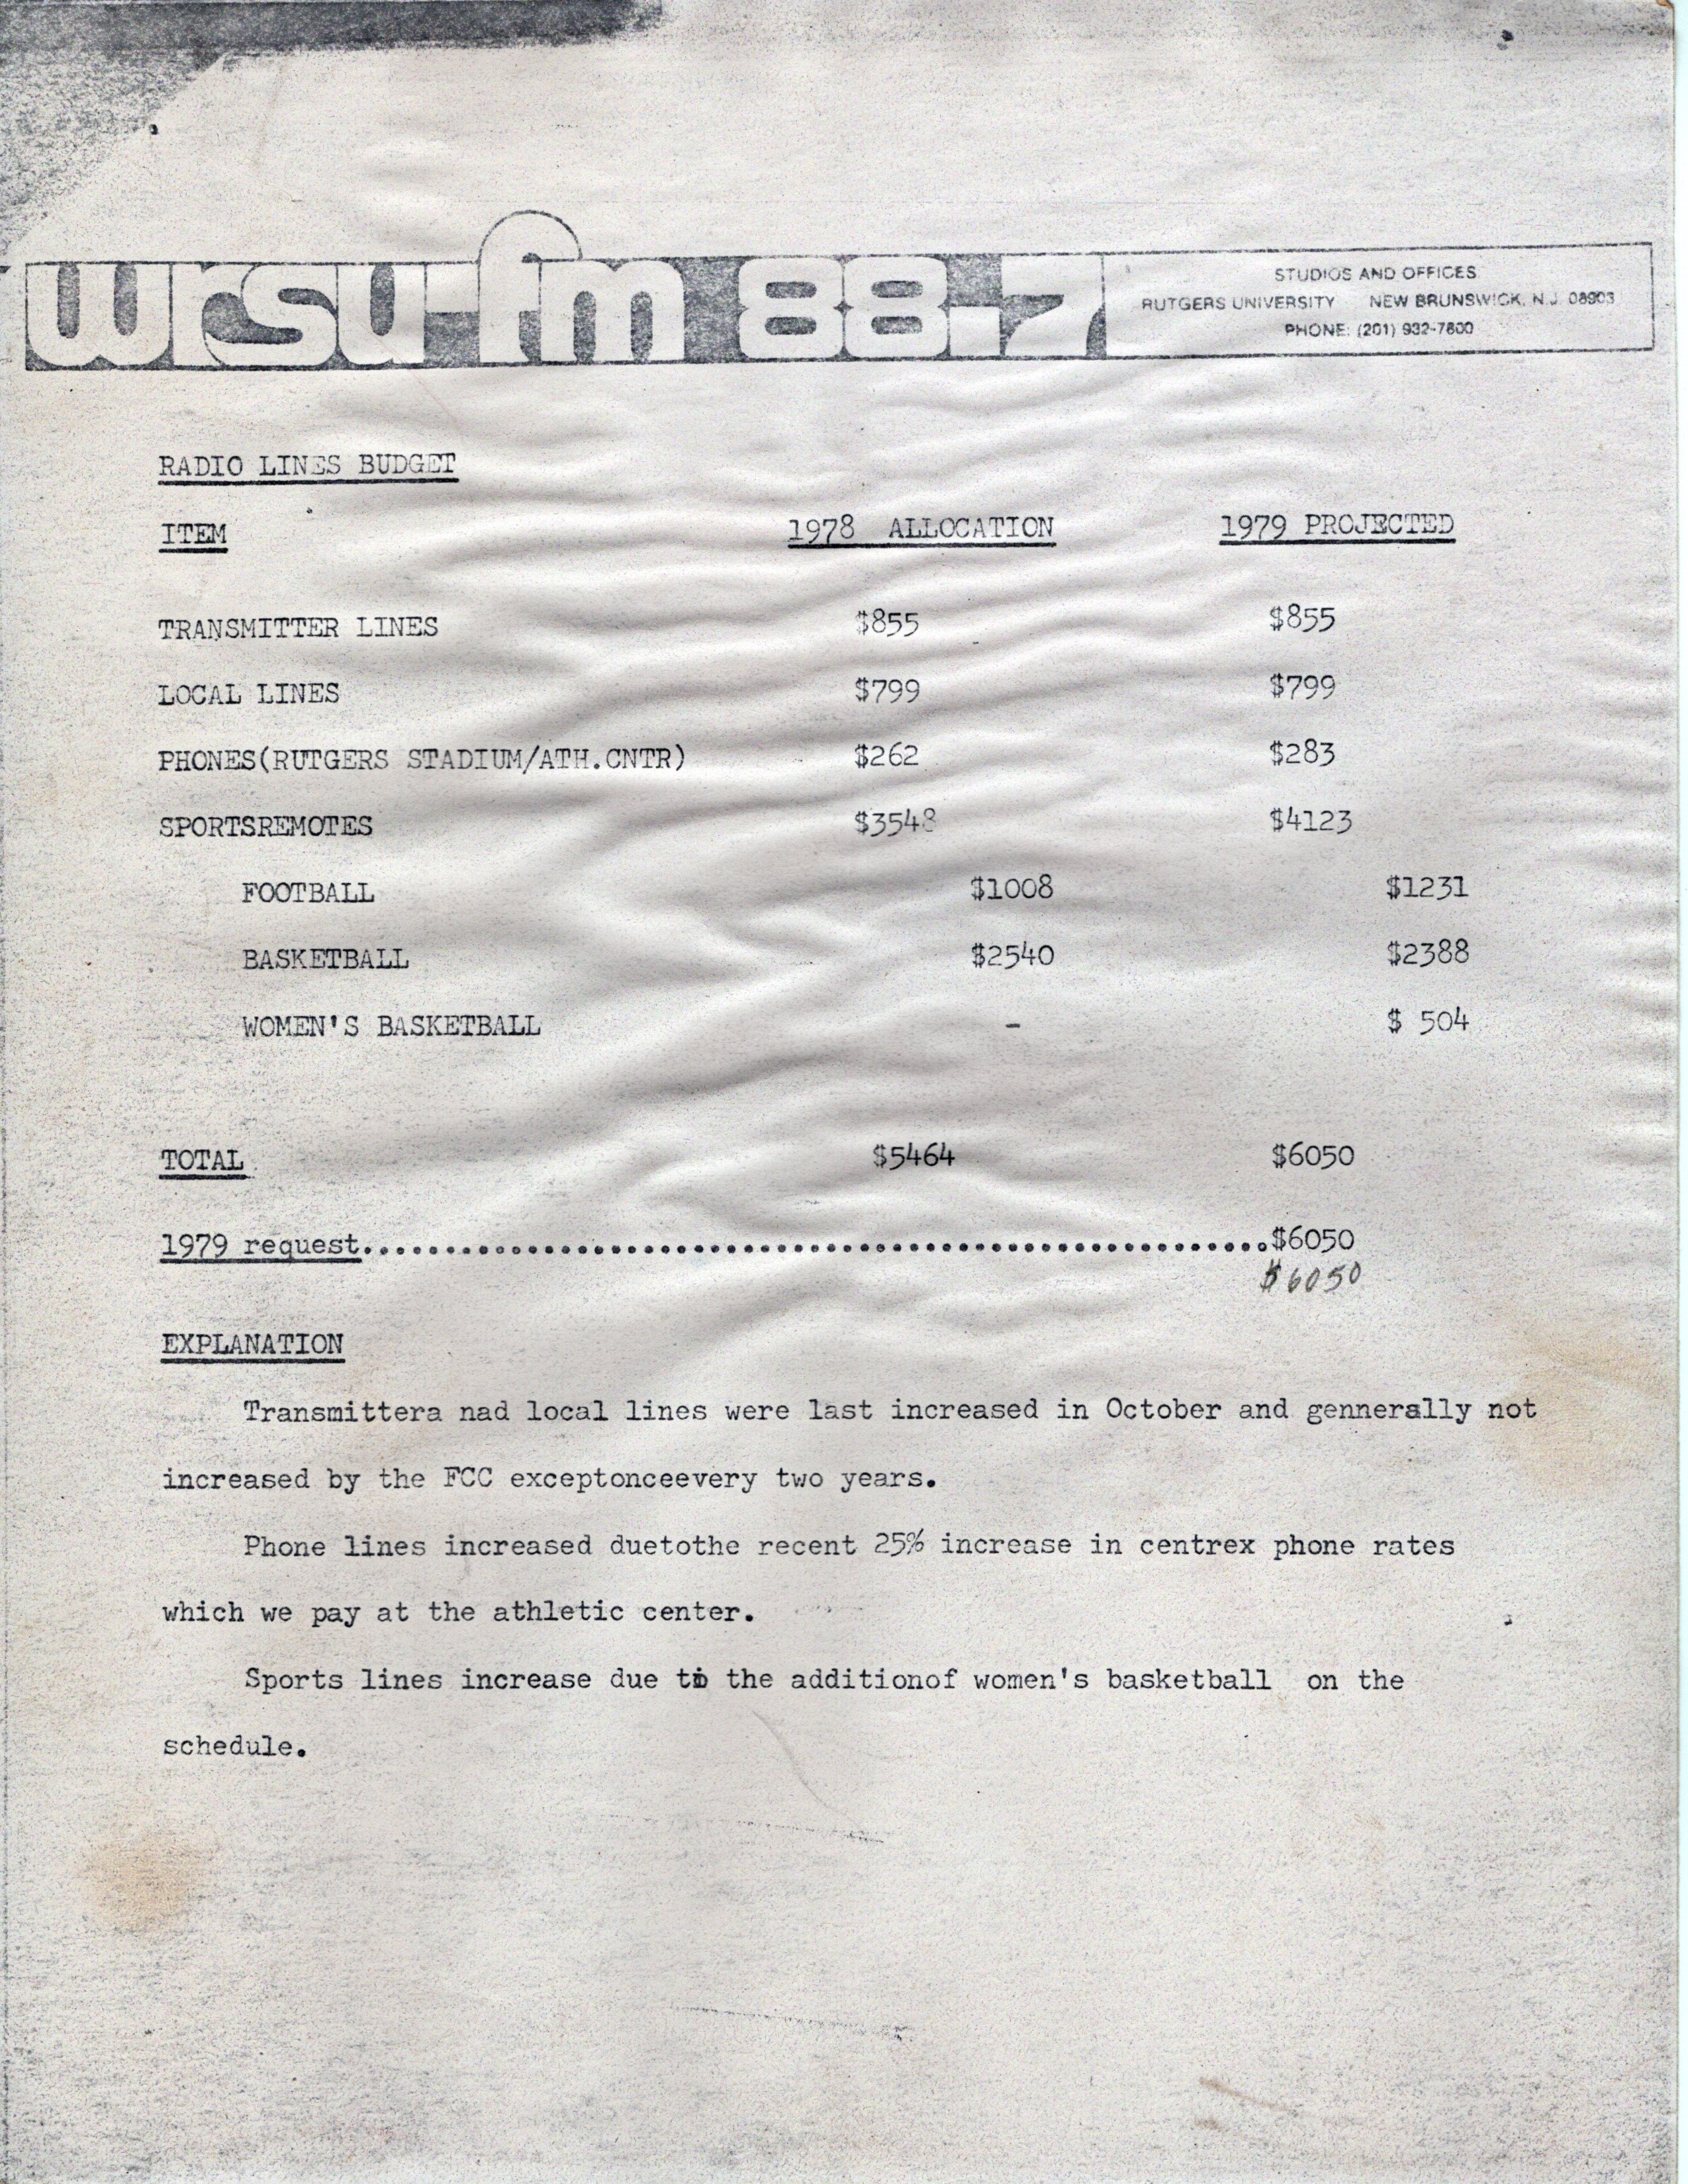 WRSU Budget 1979 - 1